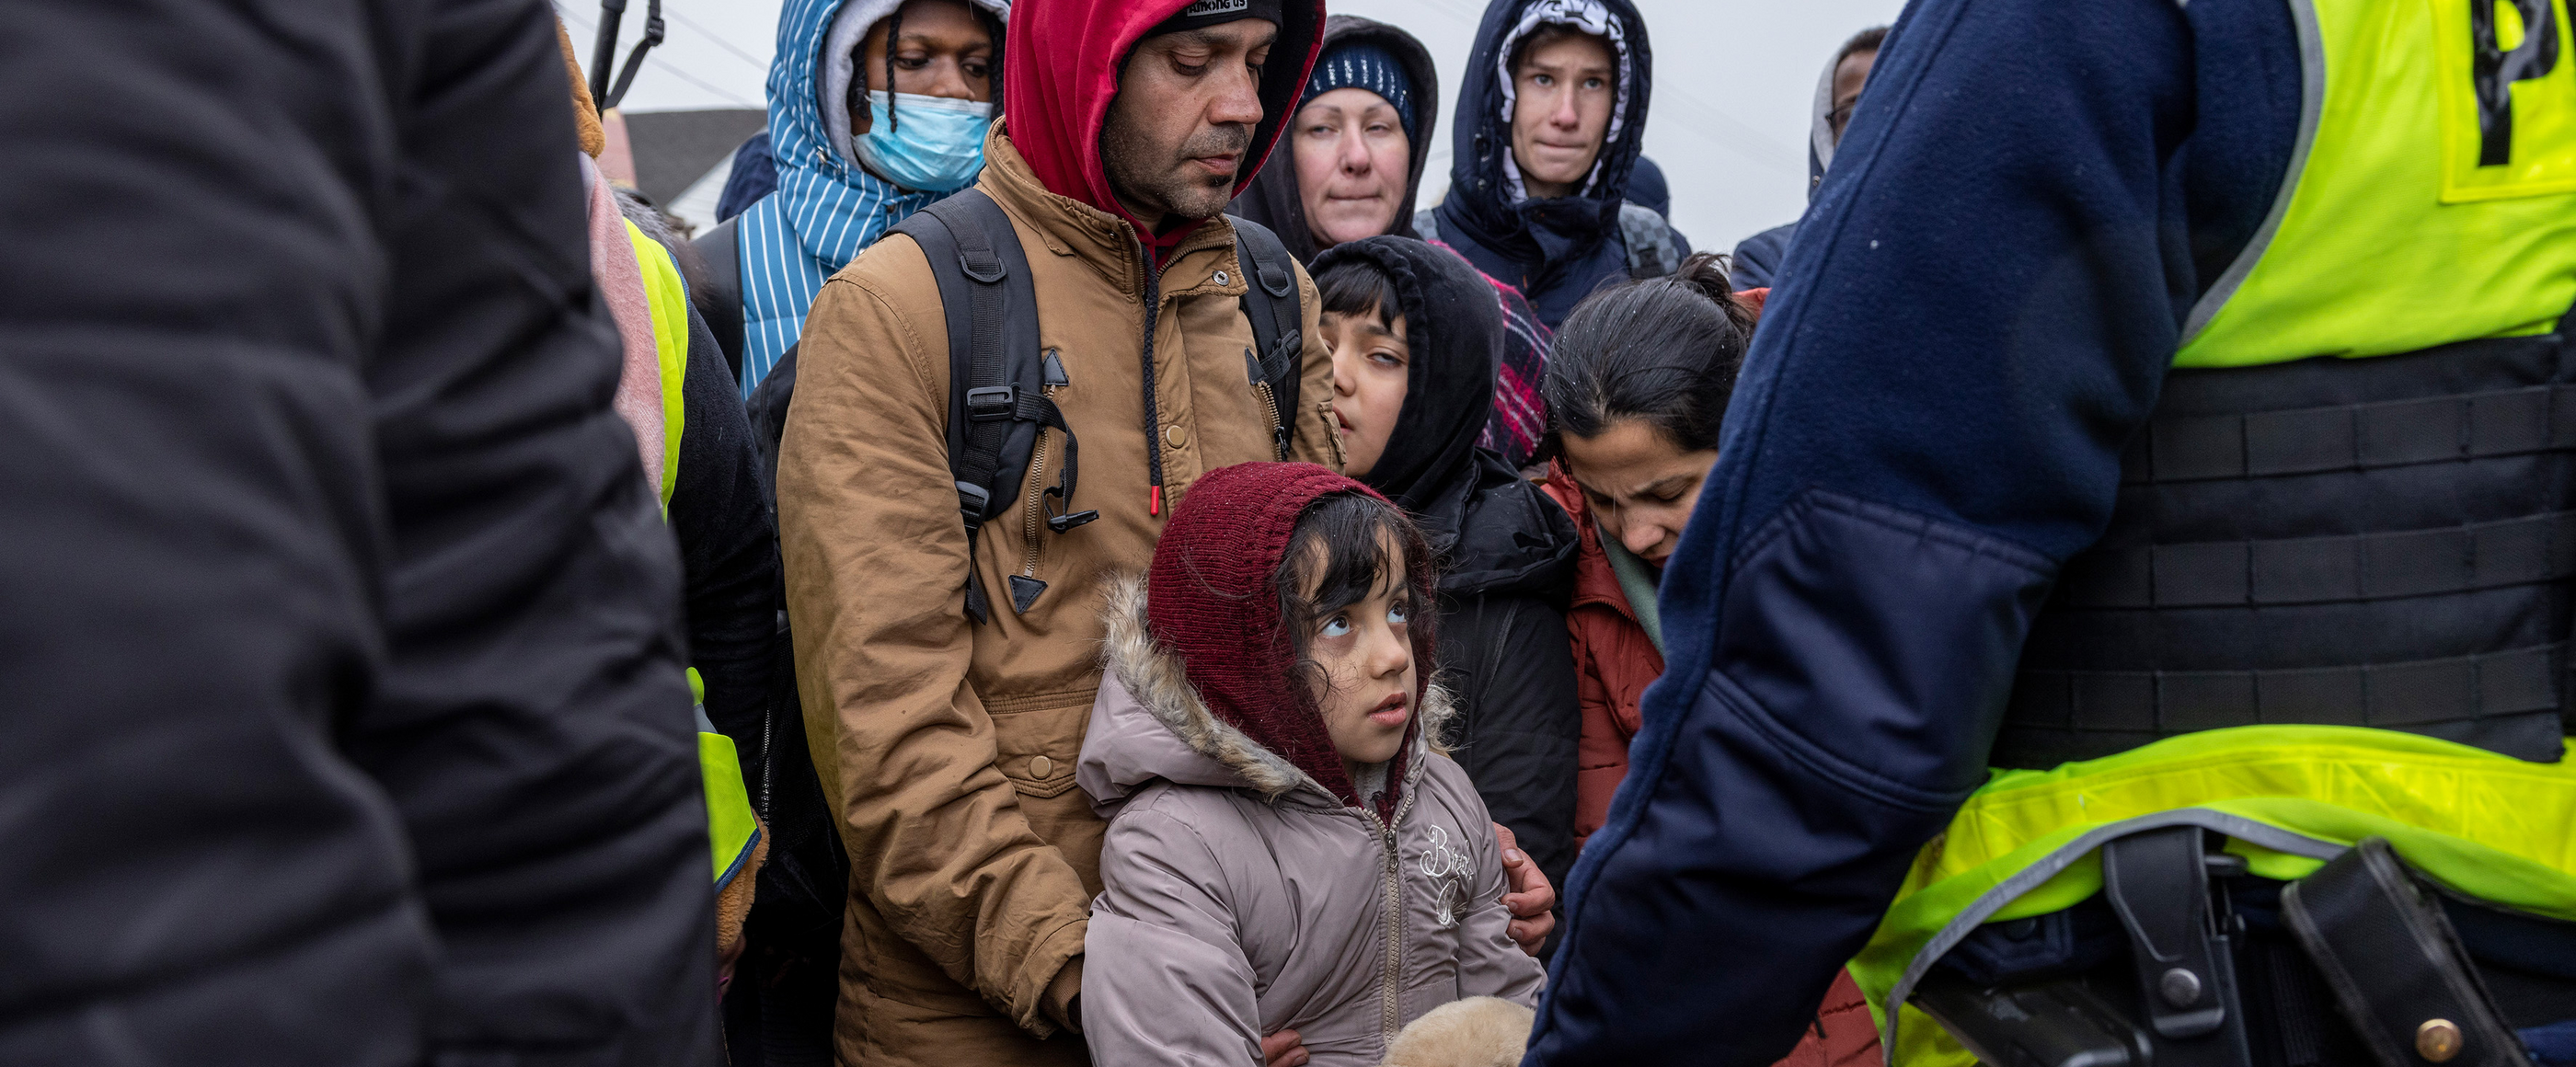 Ankunft der ukrainischen Flüchtlinge an dem polnisch-ukrainischen Grenzübergang Medyka